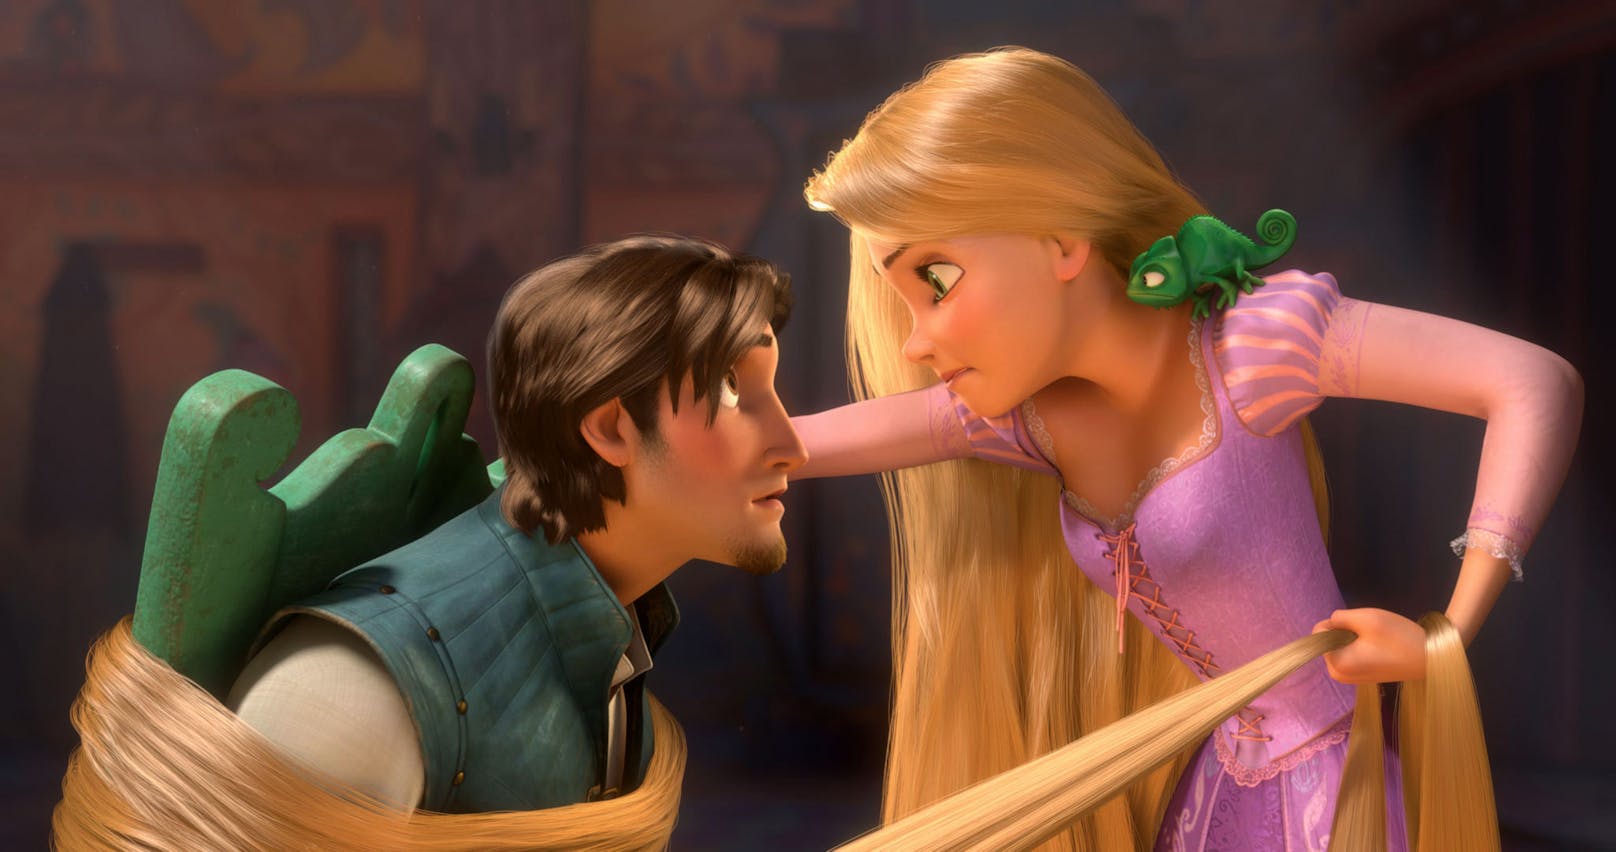 Szenenbild aus "Rapunzel – Neu verföhnt", 2010